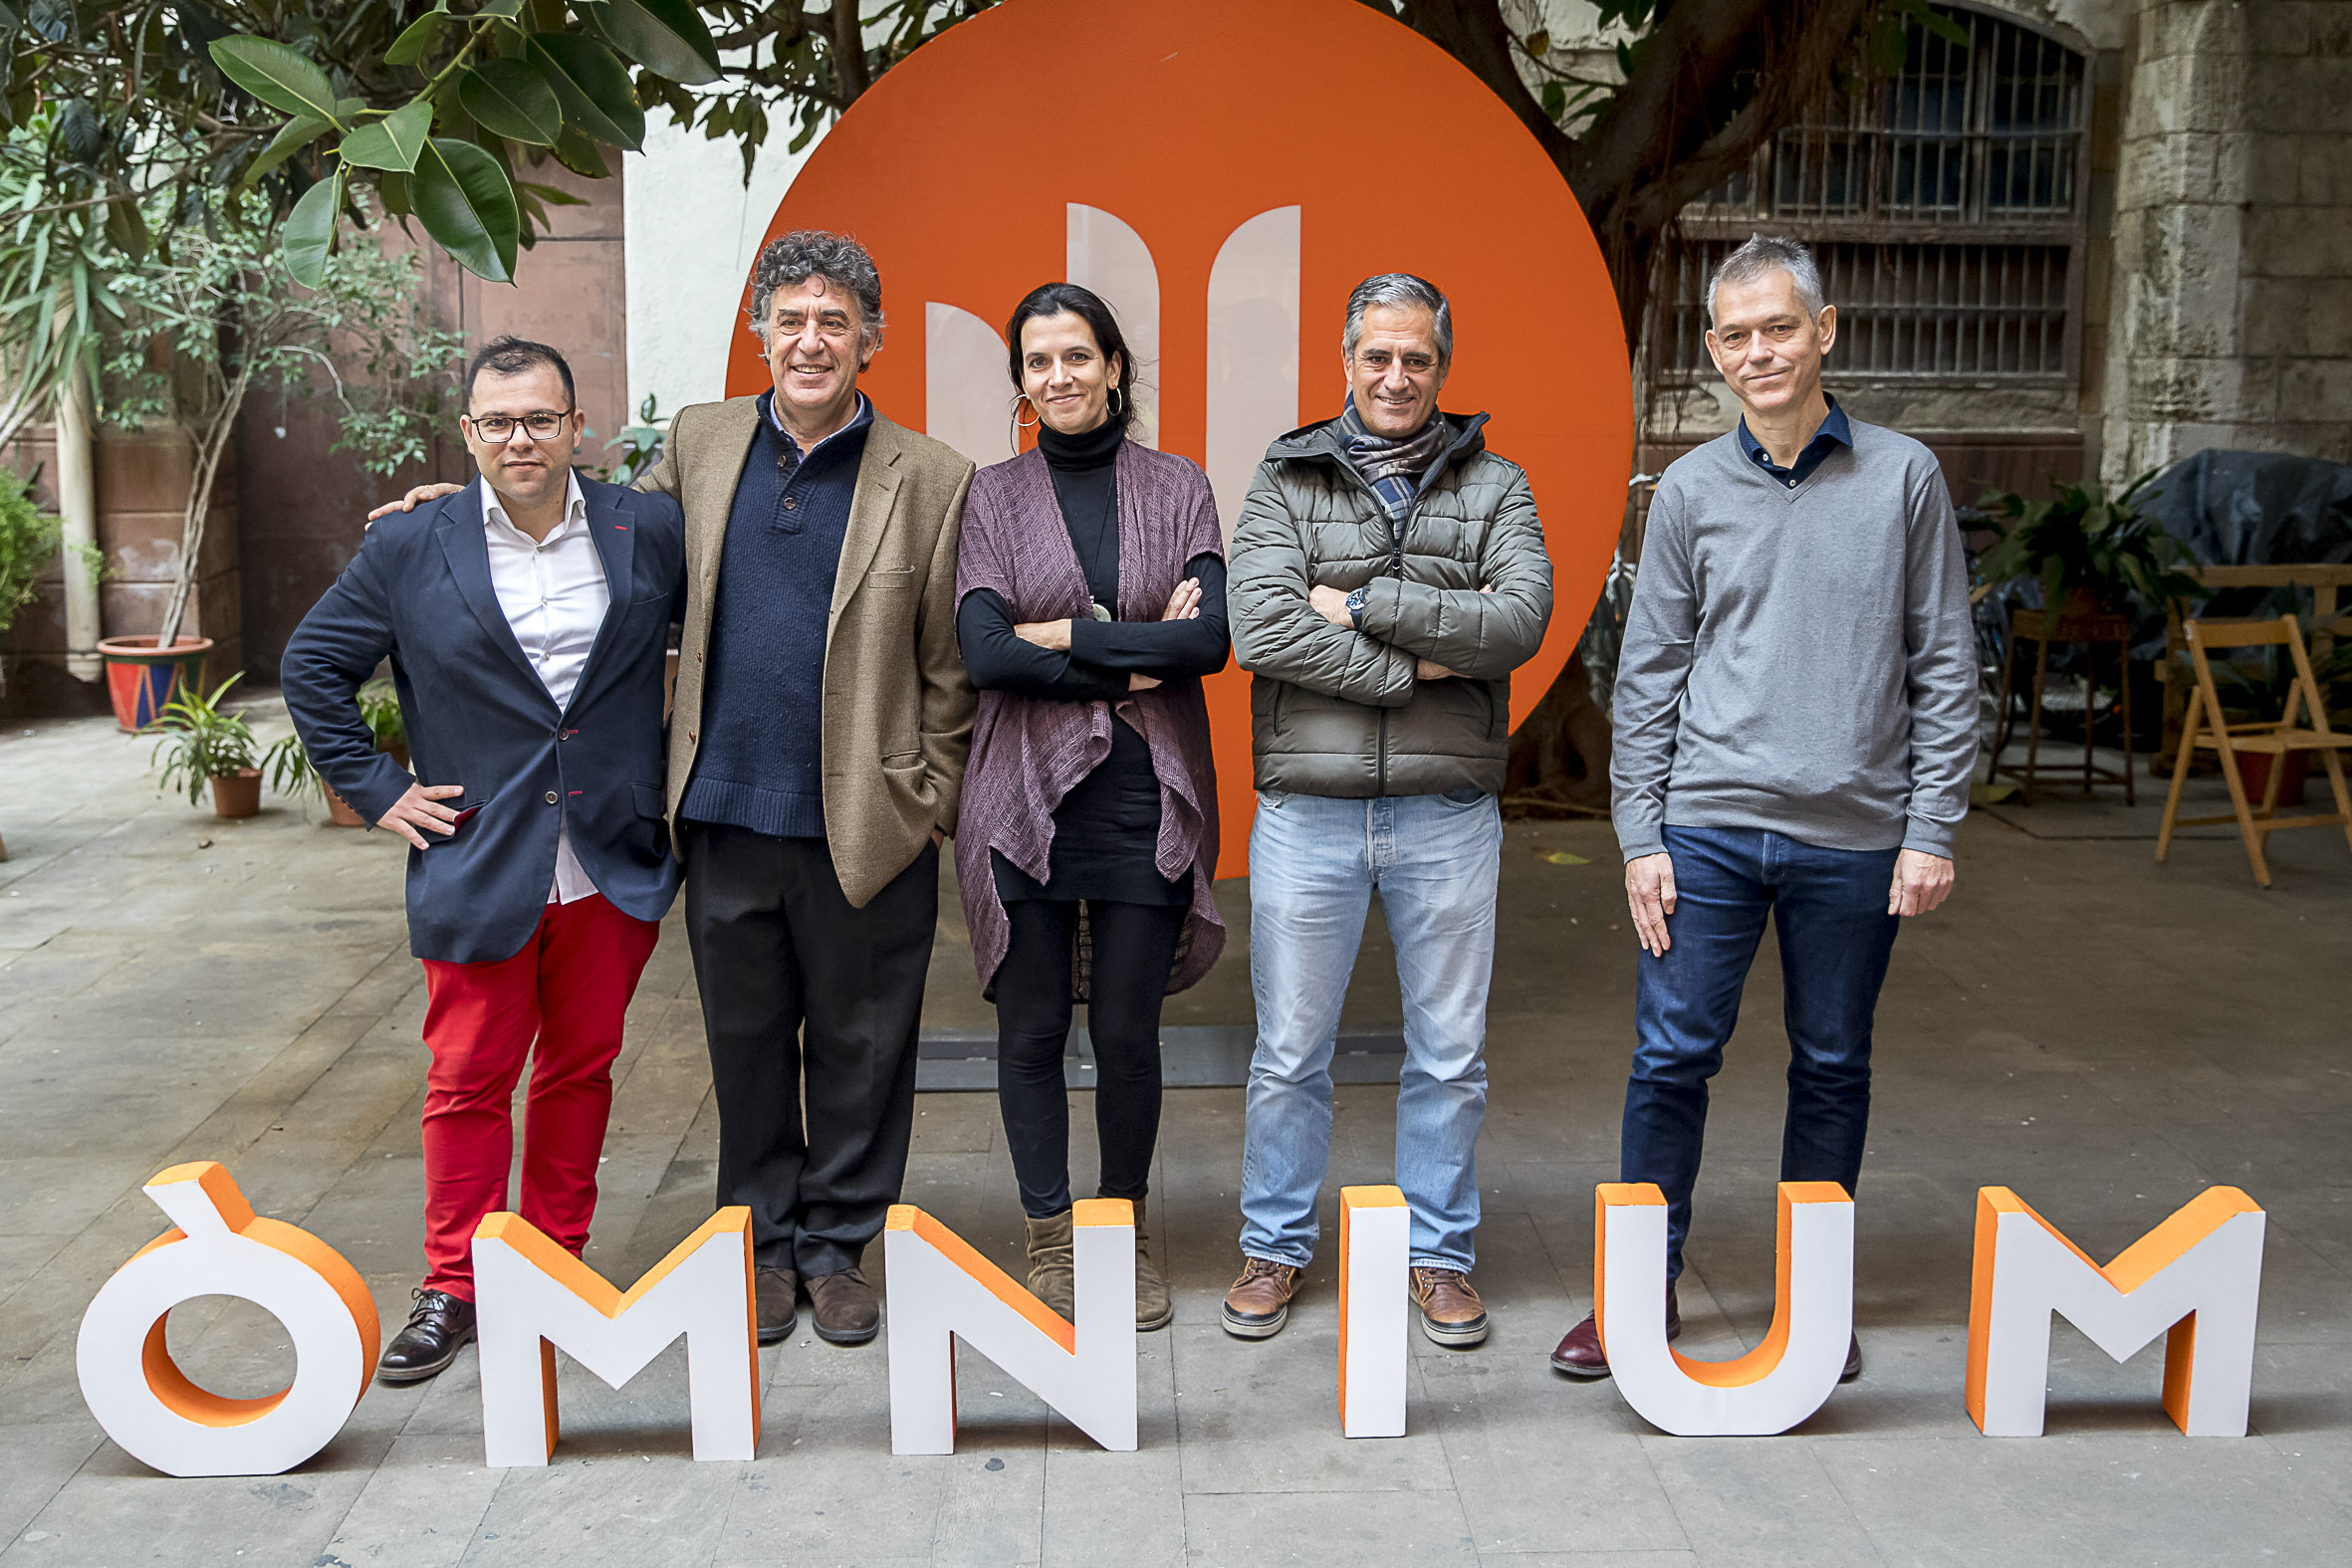 Guanyadors dels premis de la Nit de Santa Llúcia 2019. D'esquerra a dreta: Toni Mata, David Nel·lo, Carlota Gurt, Lluís Prats i Lluís Calvo.